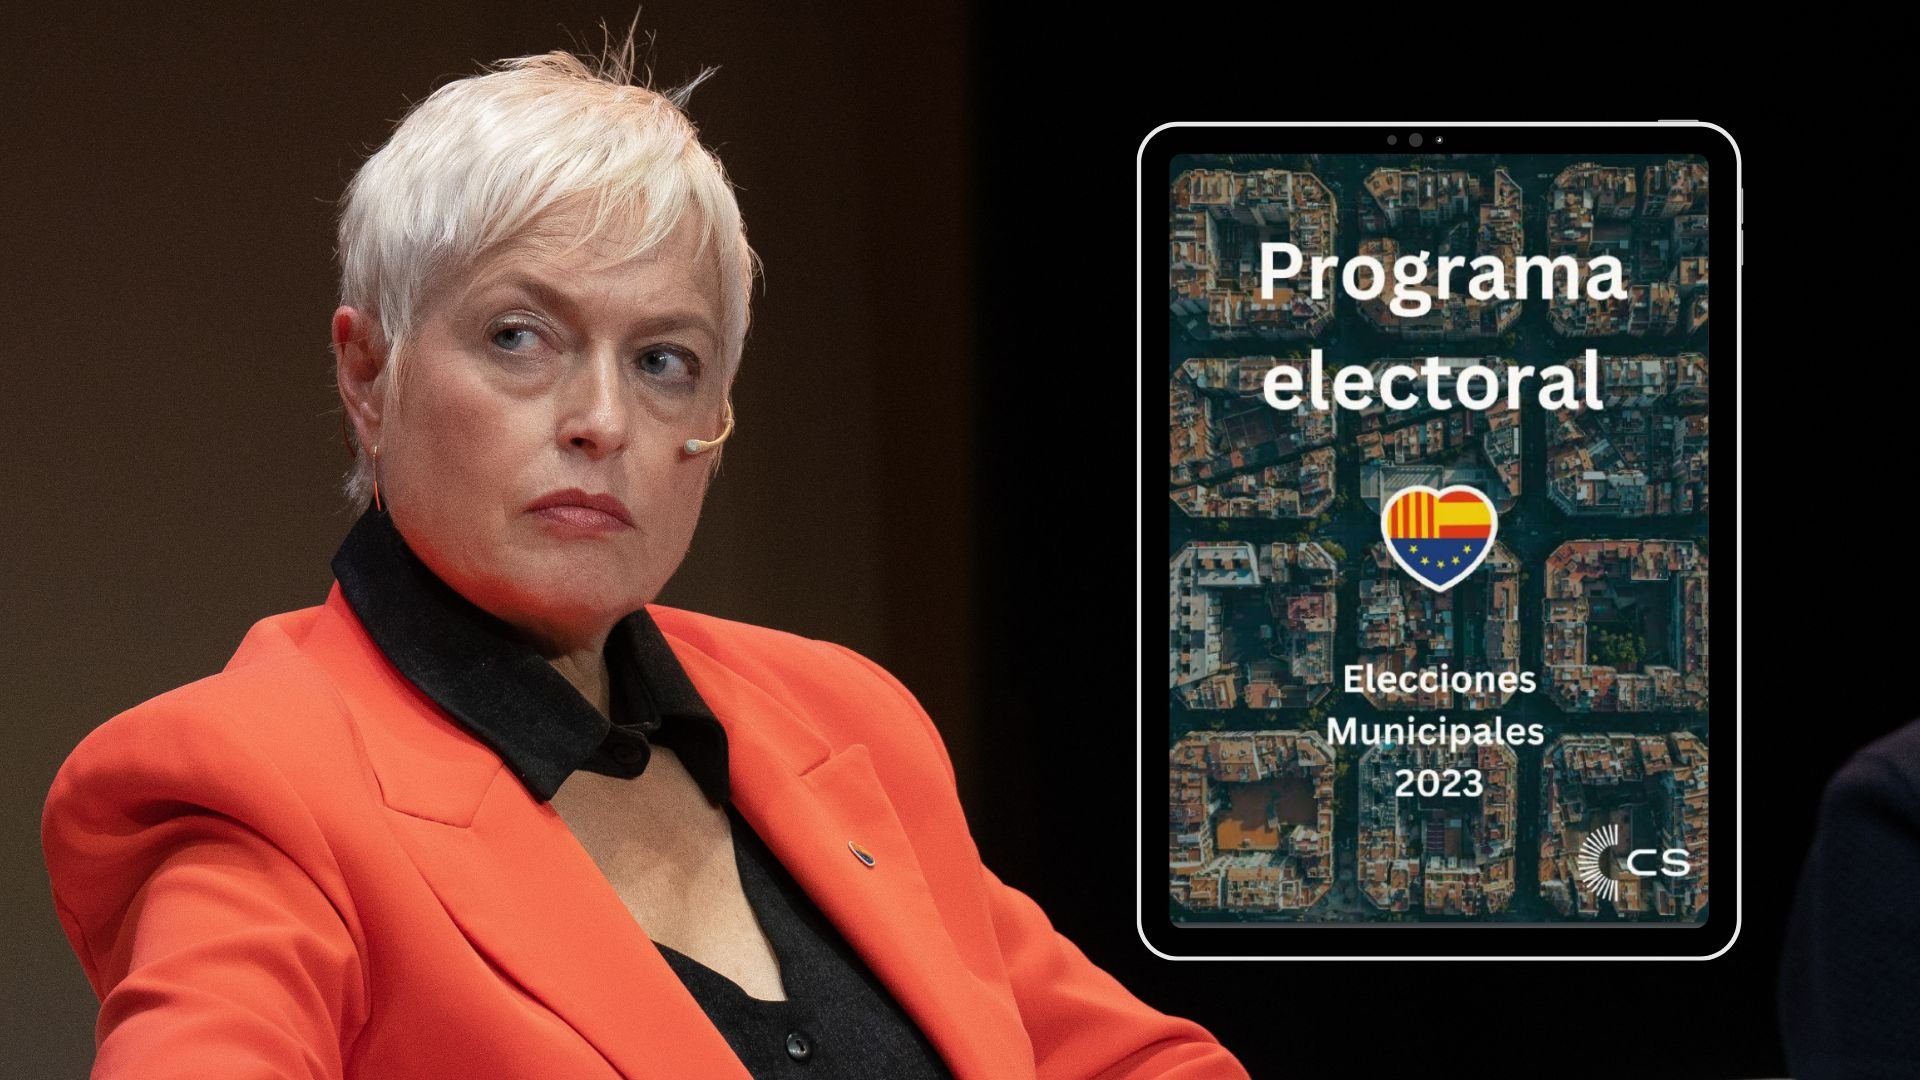 Programa electoral de Ciudadanos en Barcelona: ¿Qué propone Anna Grau?